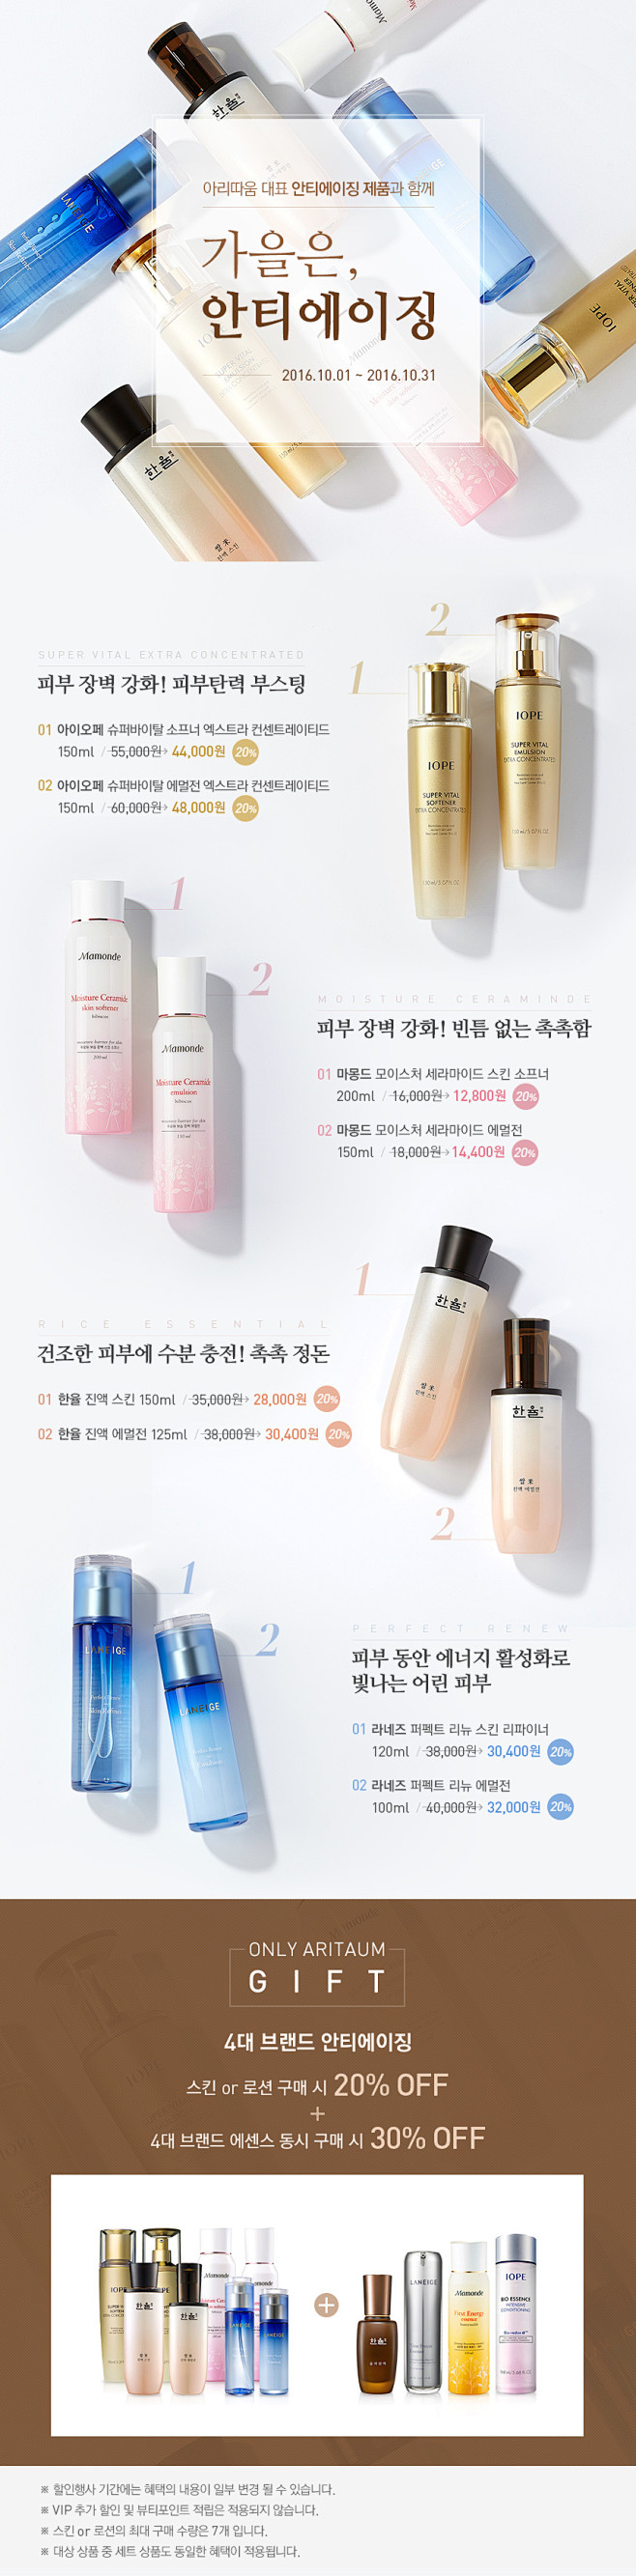 韩国化妆品 护肤品 美妆 详情描述页